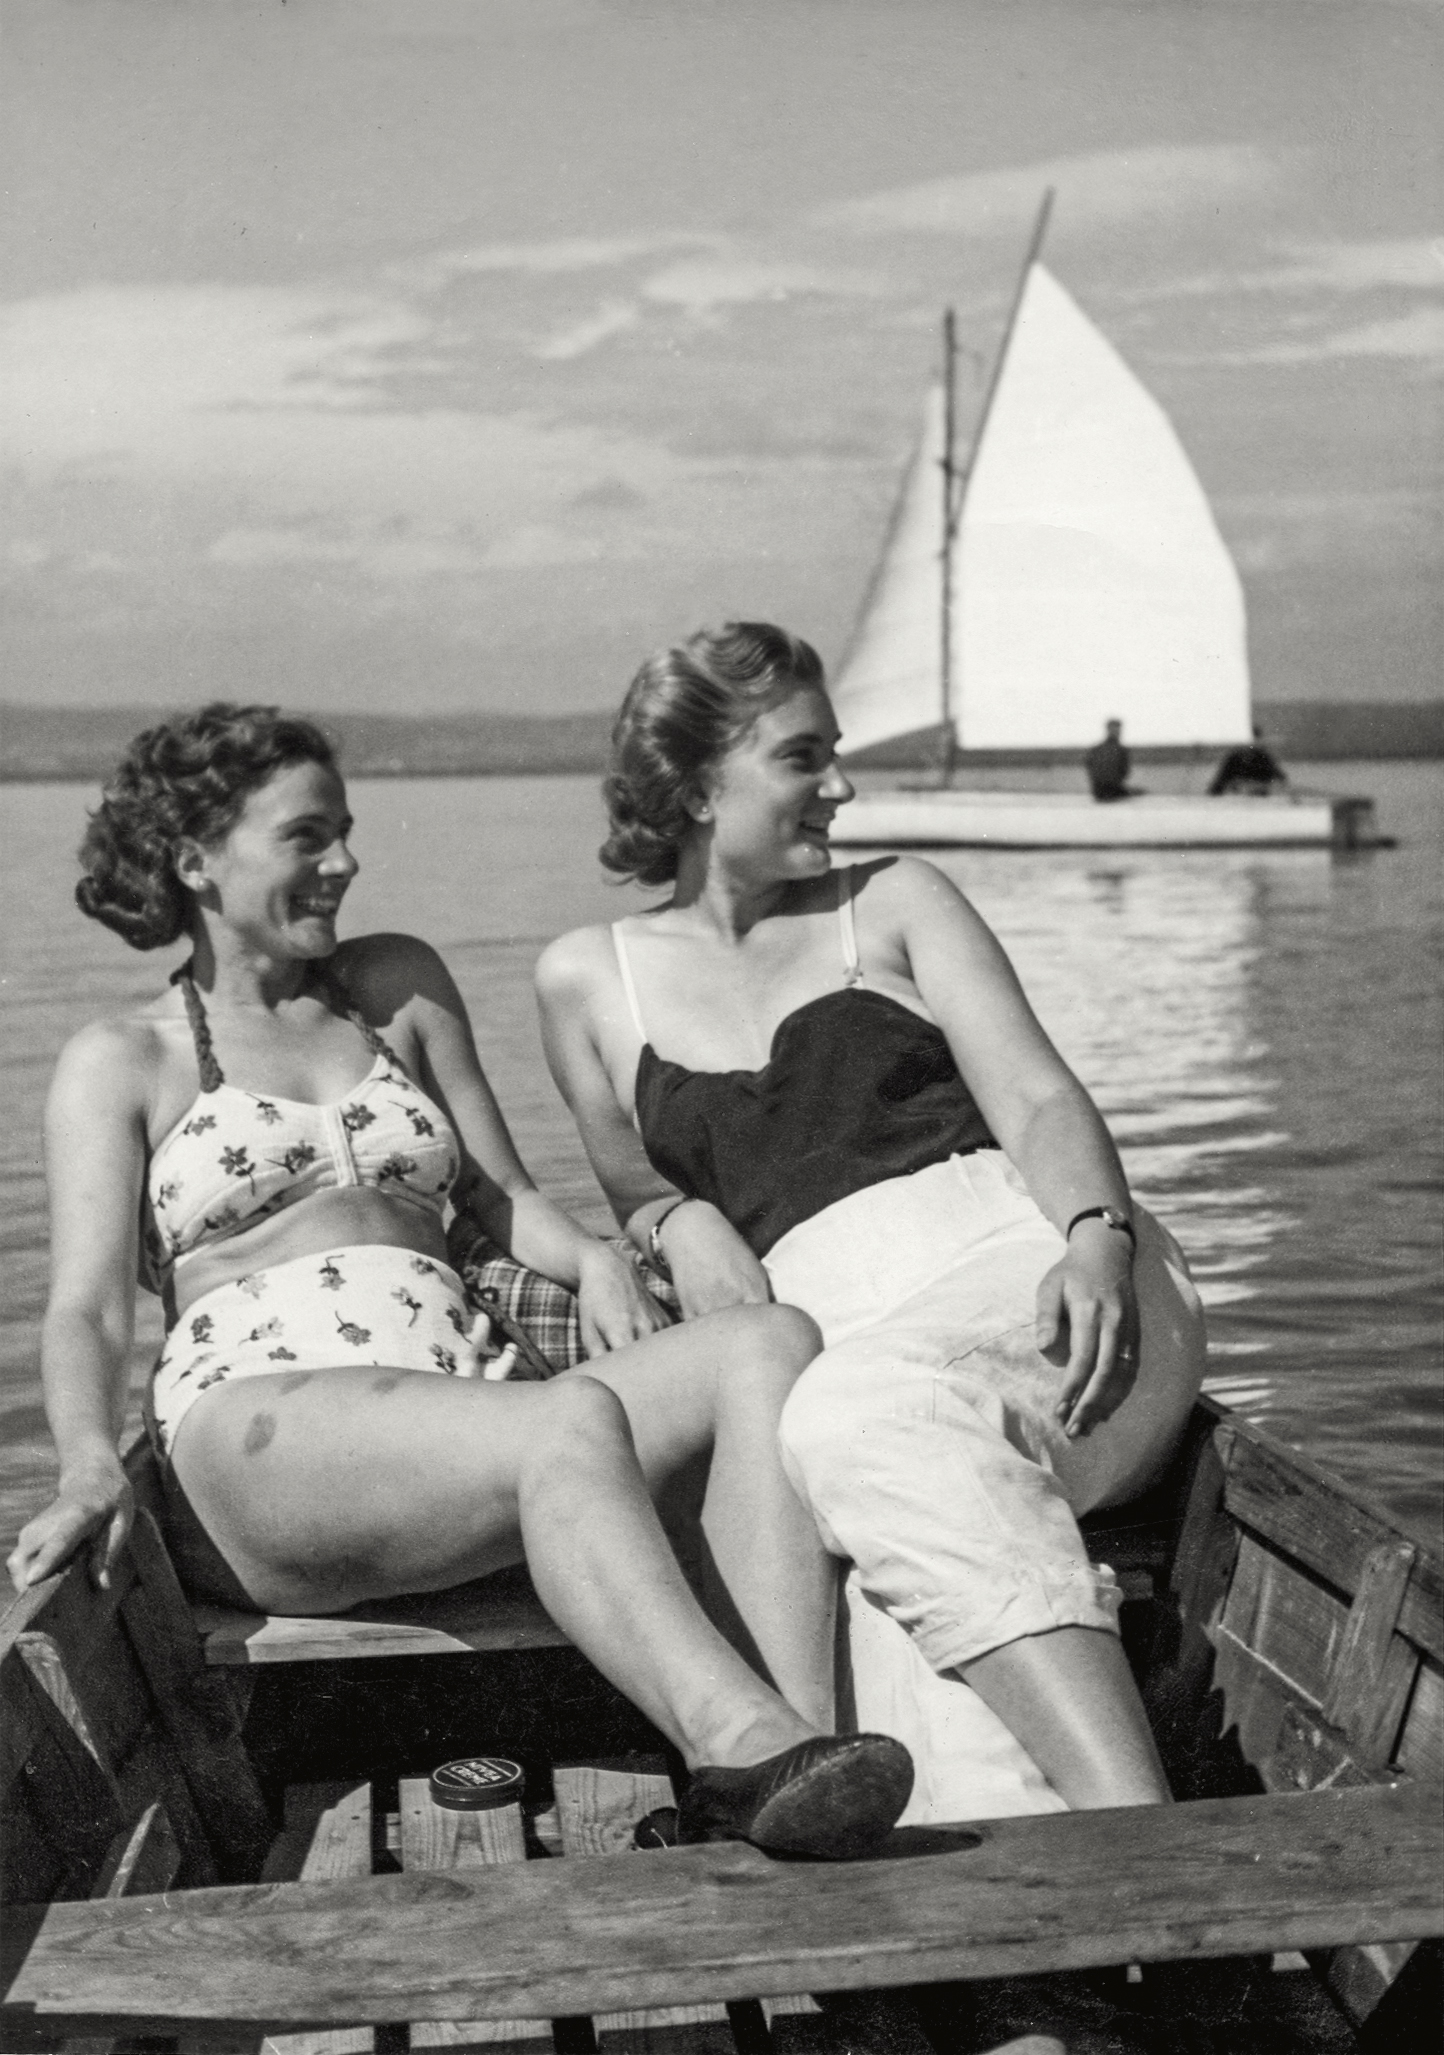 Bootsfahrt am Neusiedler See, 1950er Jahre. Foto: Louis Eschenauer. Quelle: Bgld. Landesarchiv/Fotosammlung.